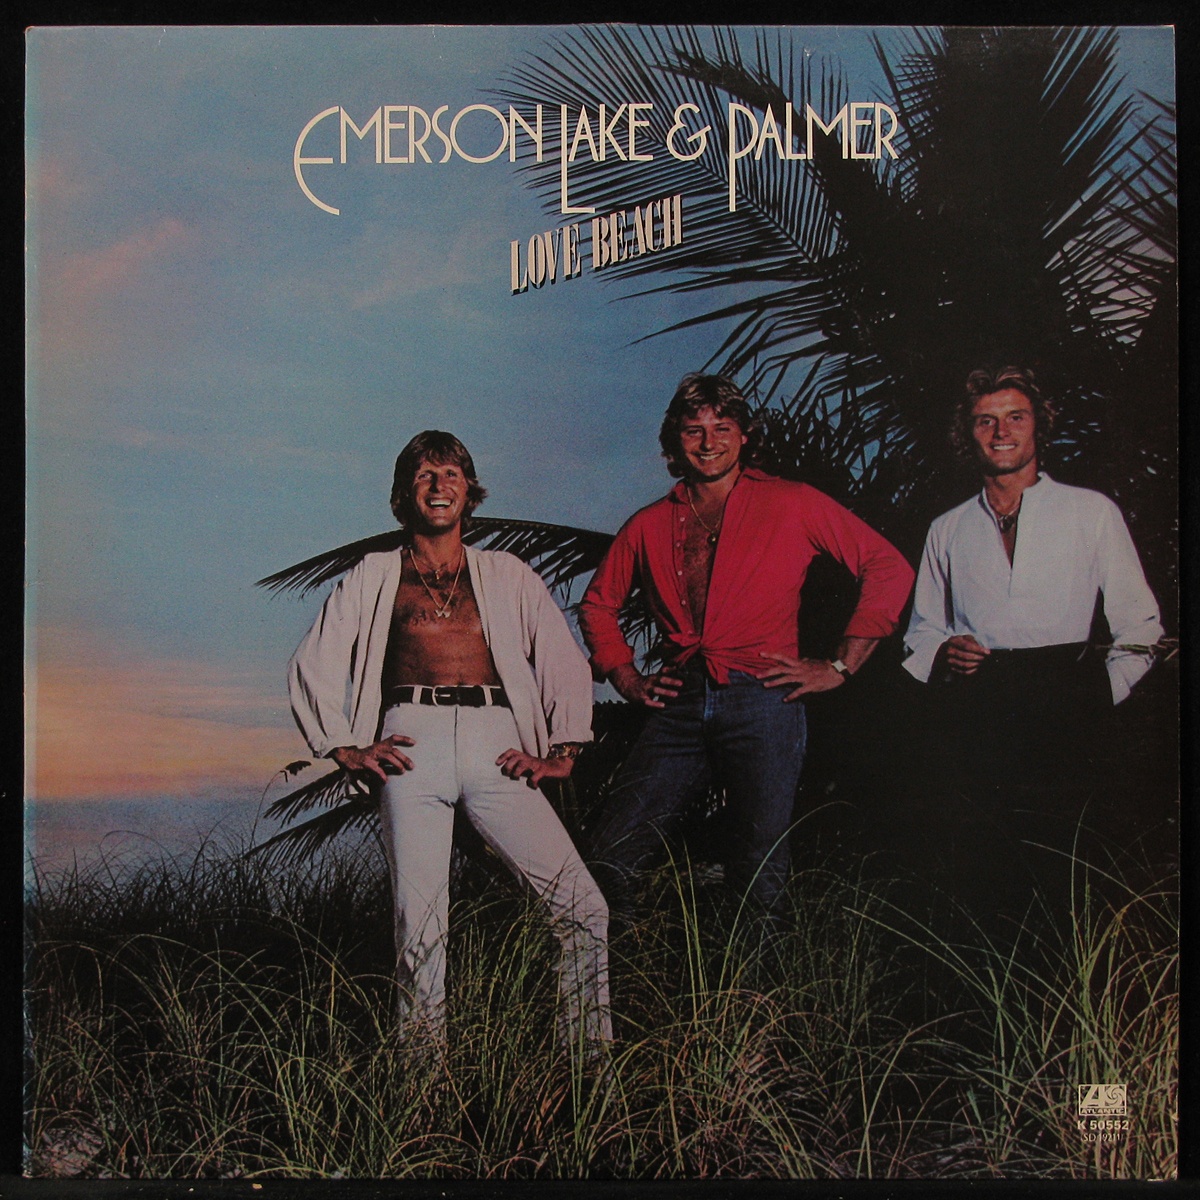 LP Emerson, Lake & Palmer — Love Beach фото